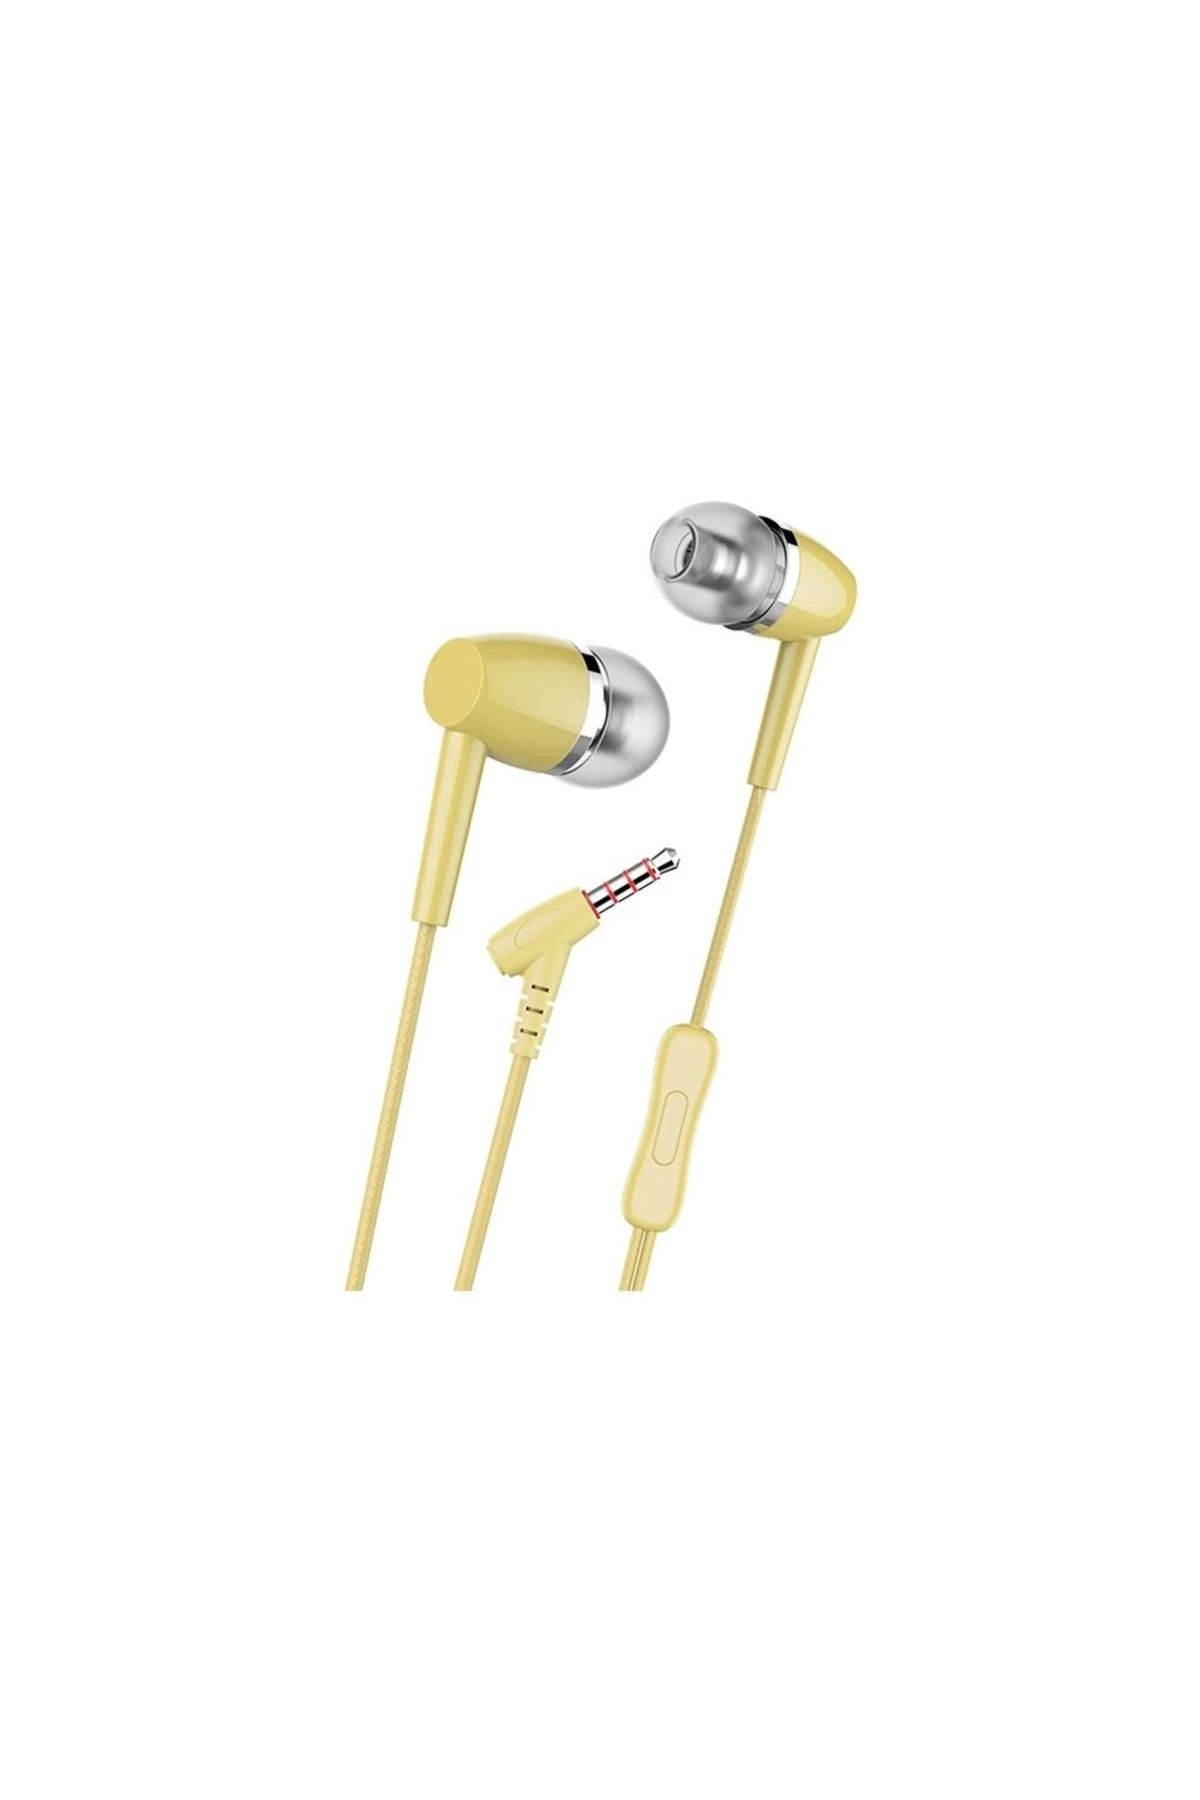 Modaliz Basic Hs606 Mikrofonlu Kulakiçi Kulaklık